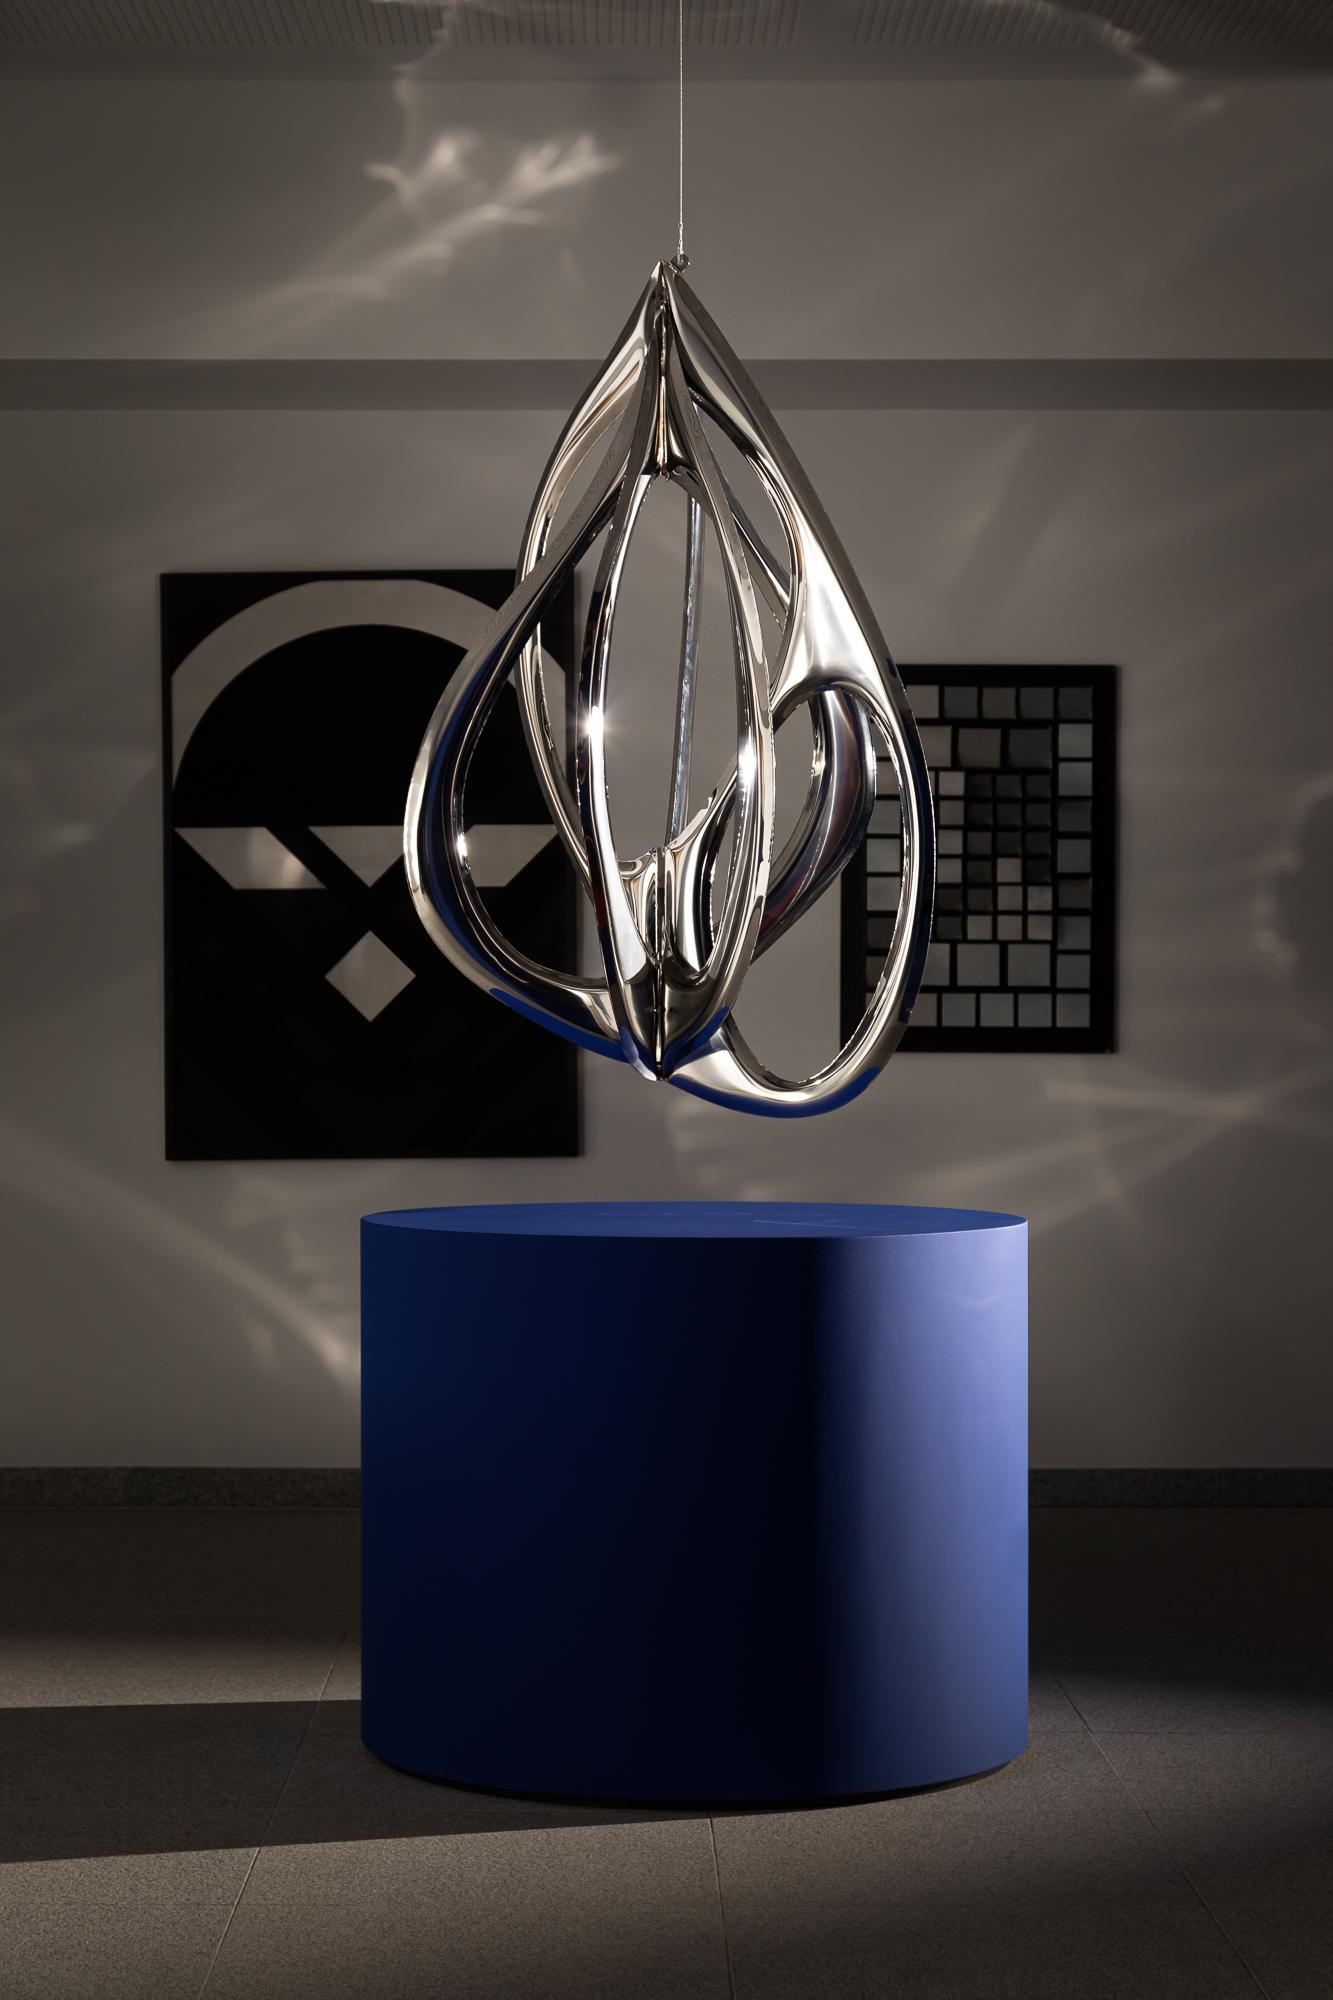 Rzeźba Aorta autorstwa Oskara Zięty, w formie metalowego kokonu wykonany z łuków w kształcie aorty